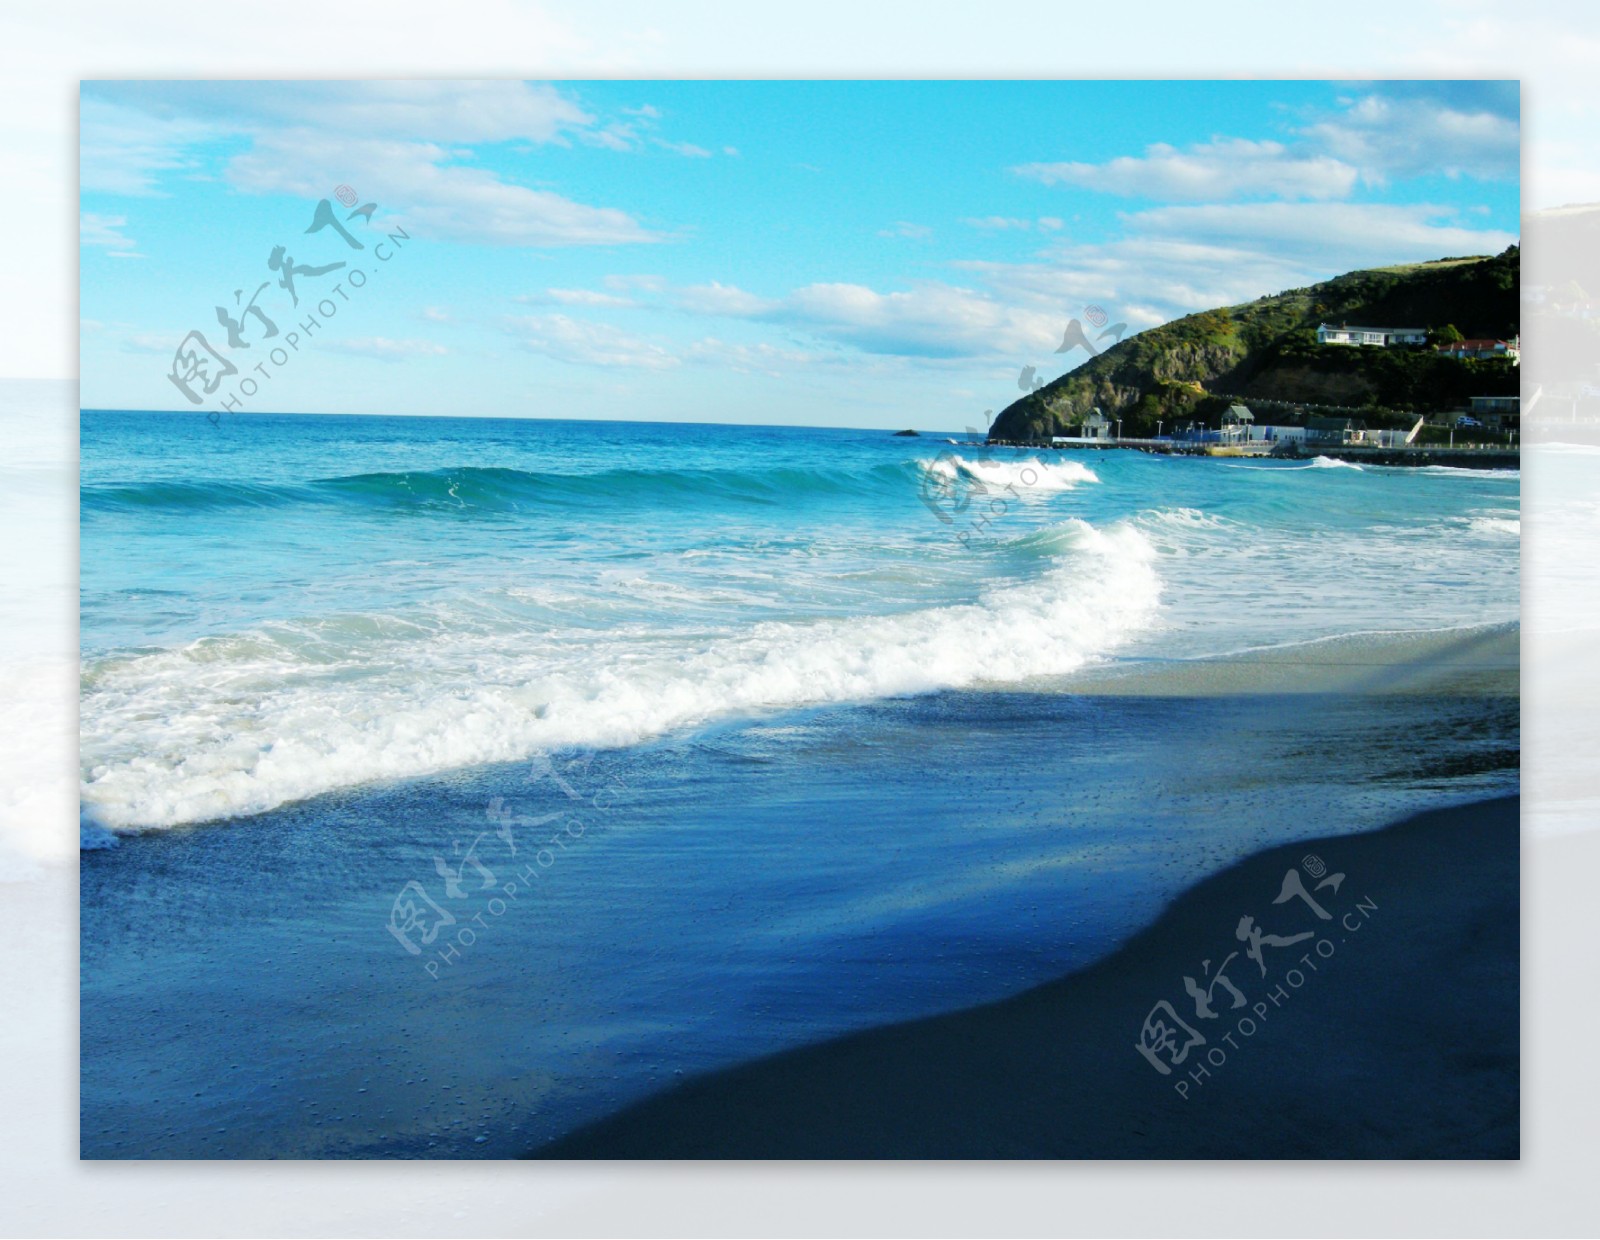 新西兰达尼丁stclair海滩图片